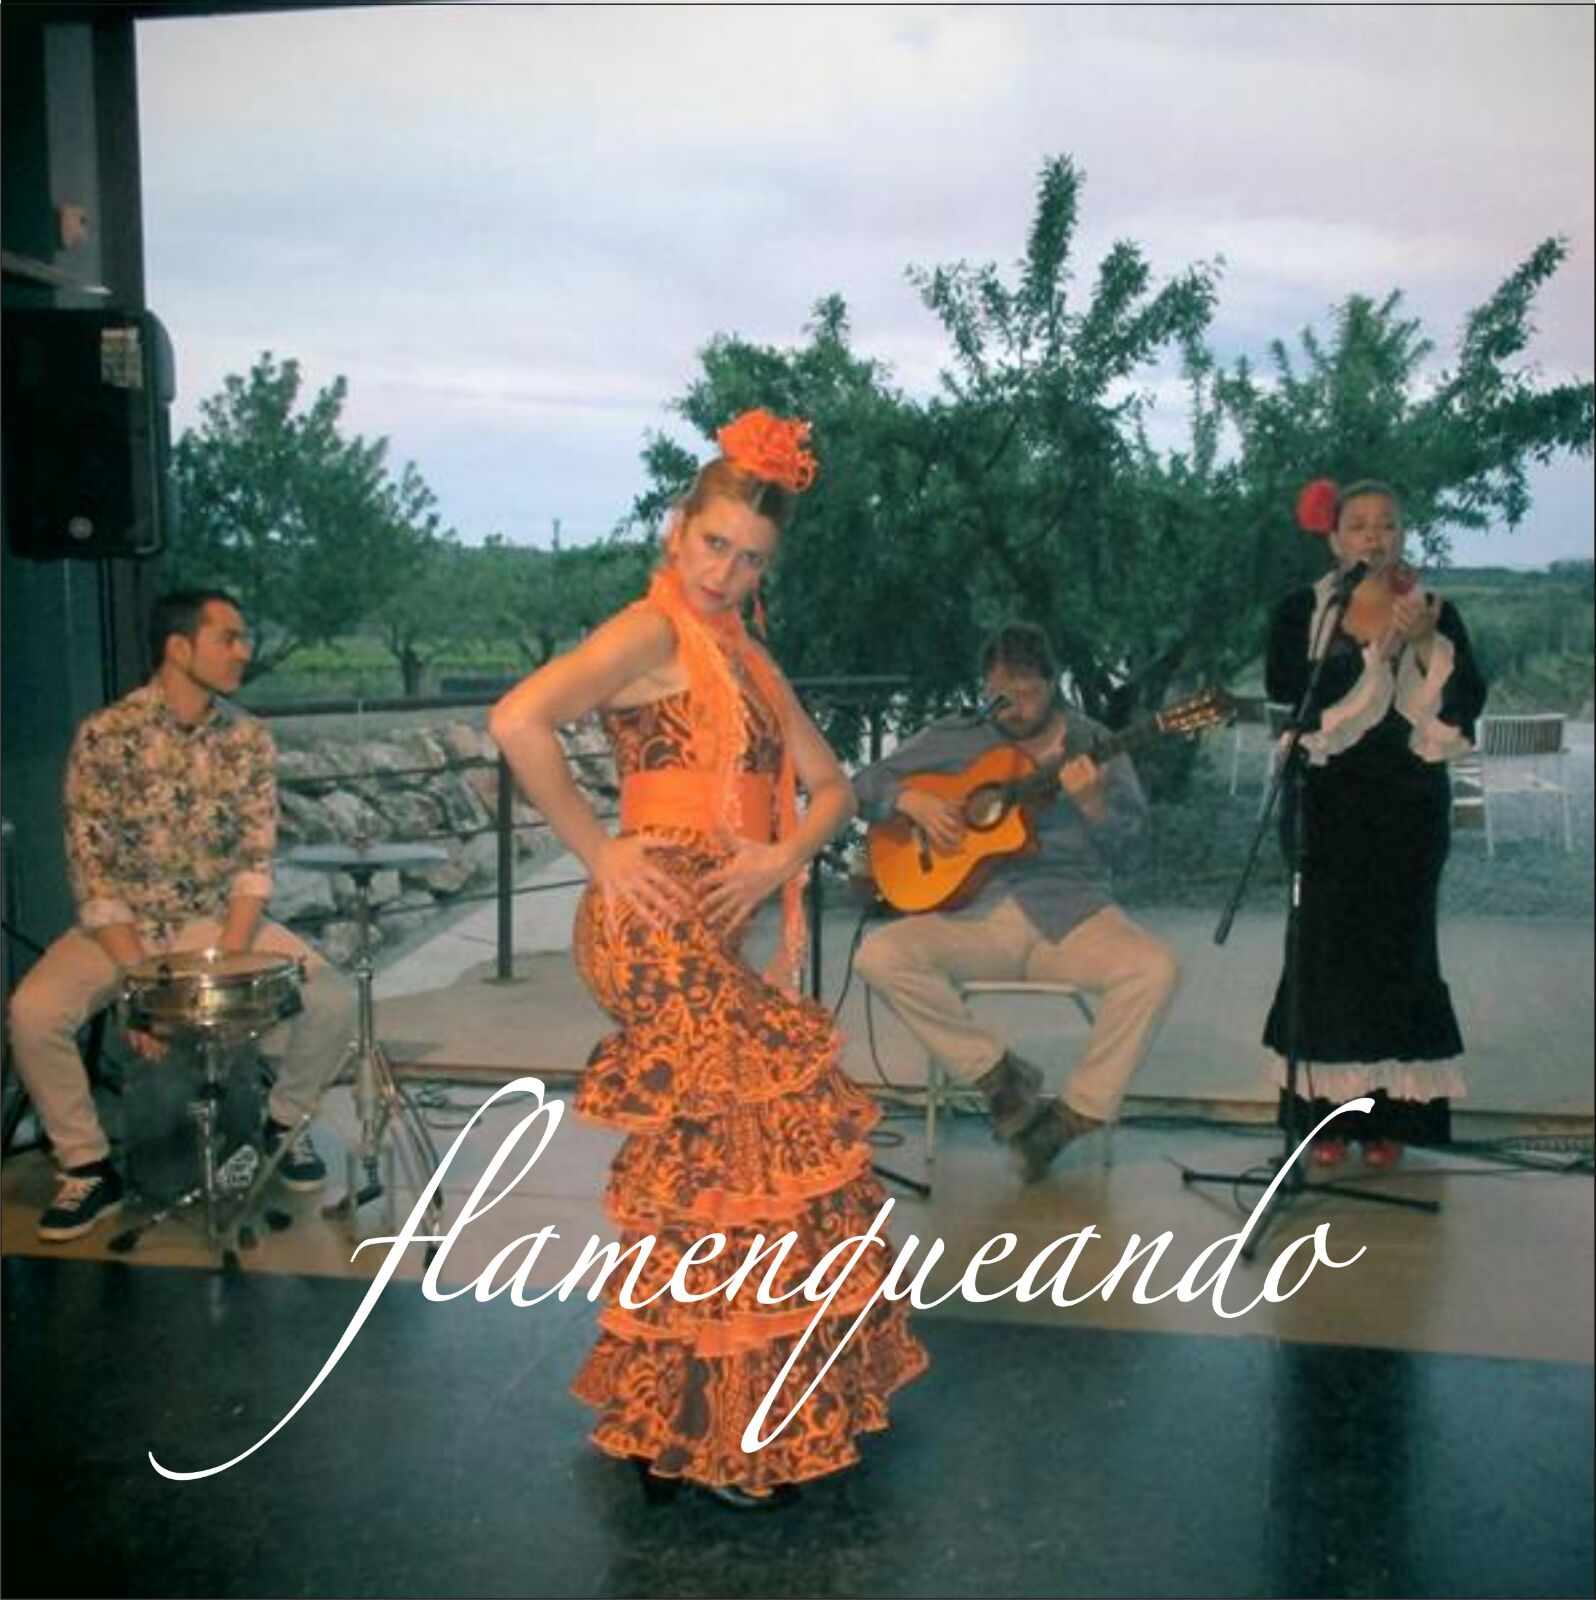 flamenkeando flamencorros